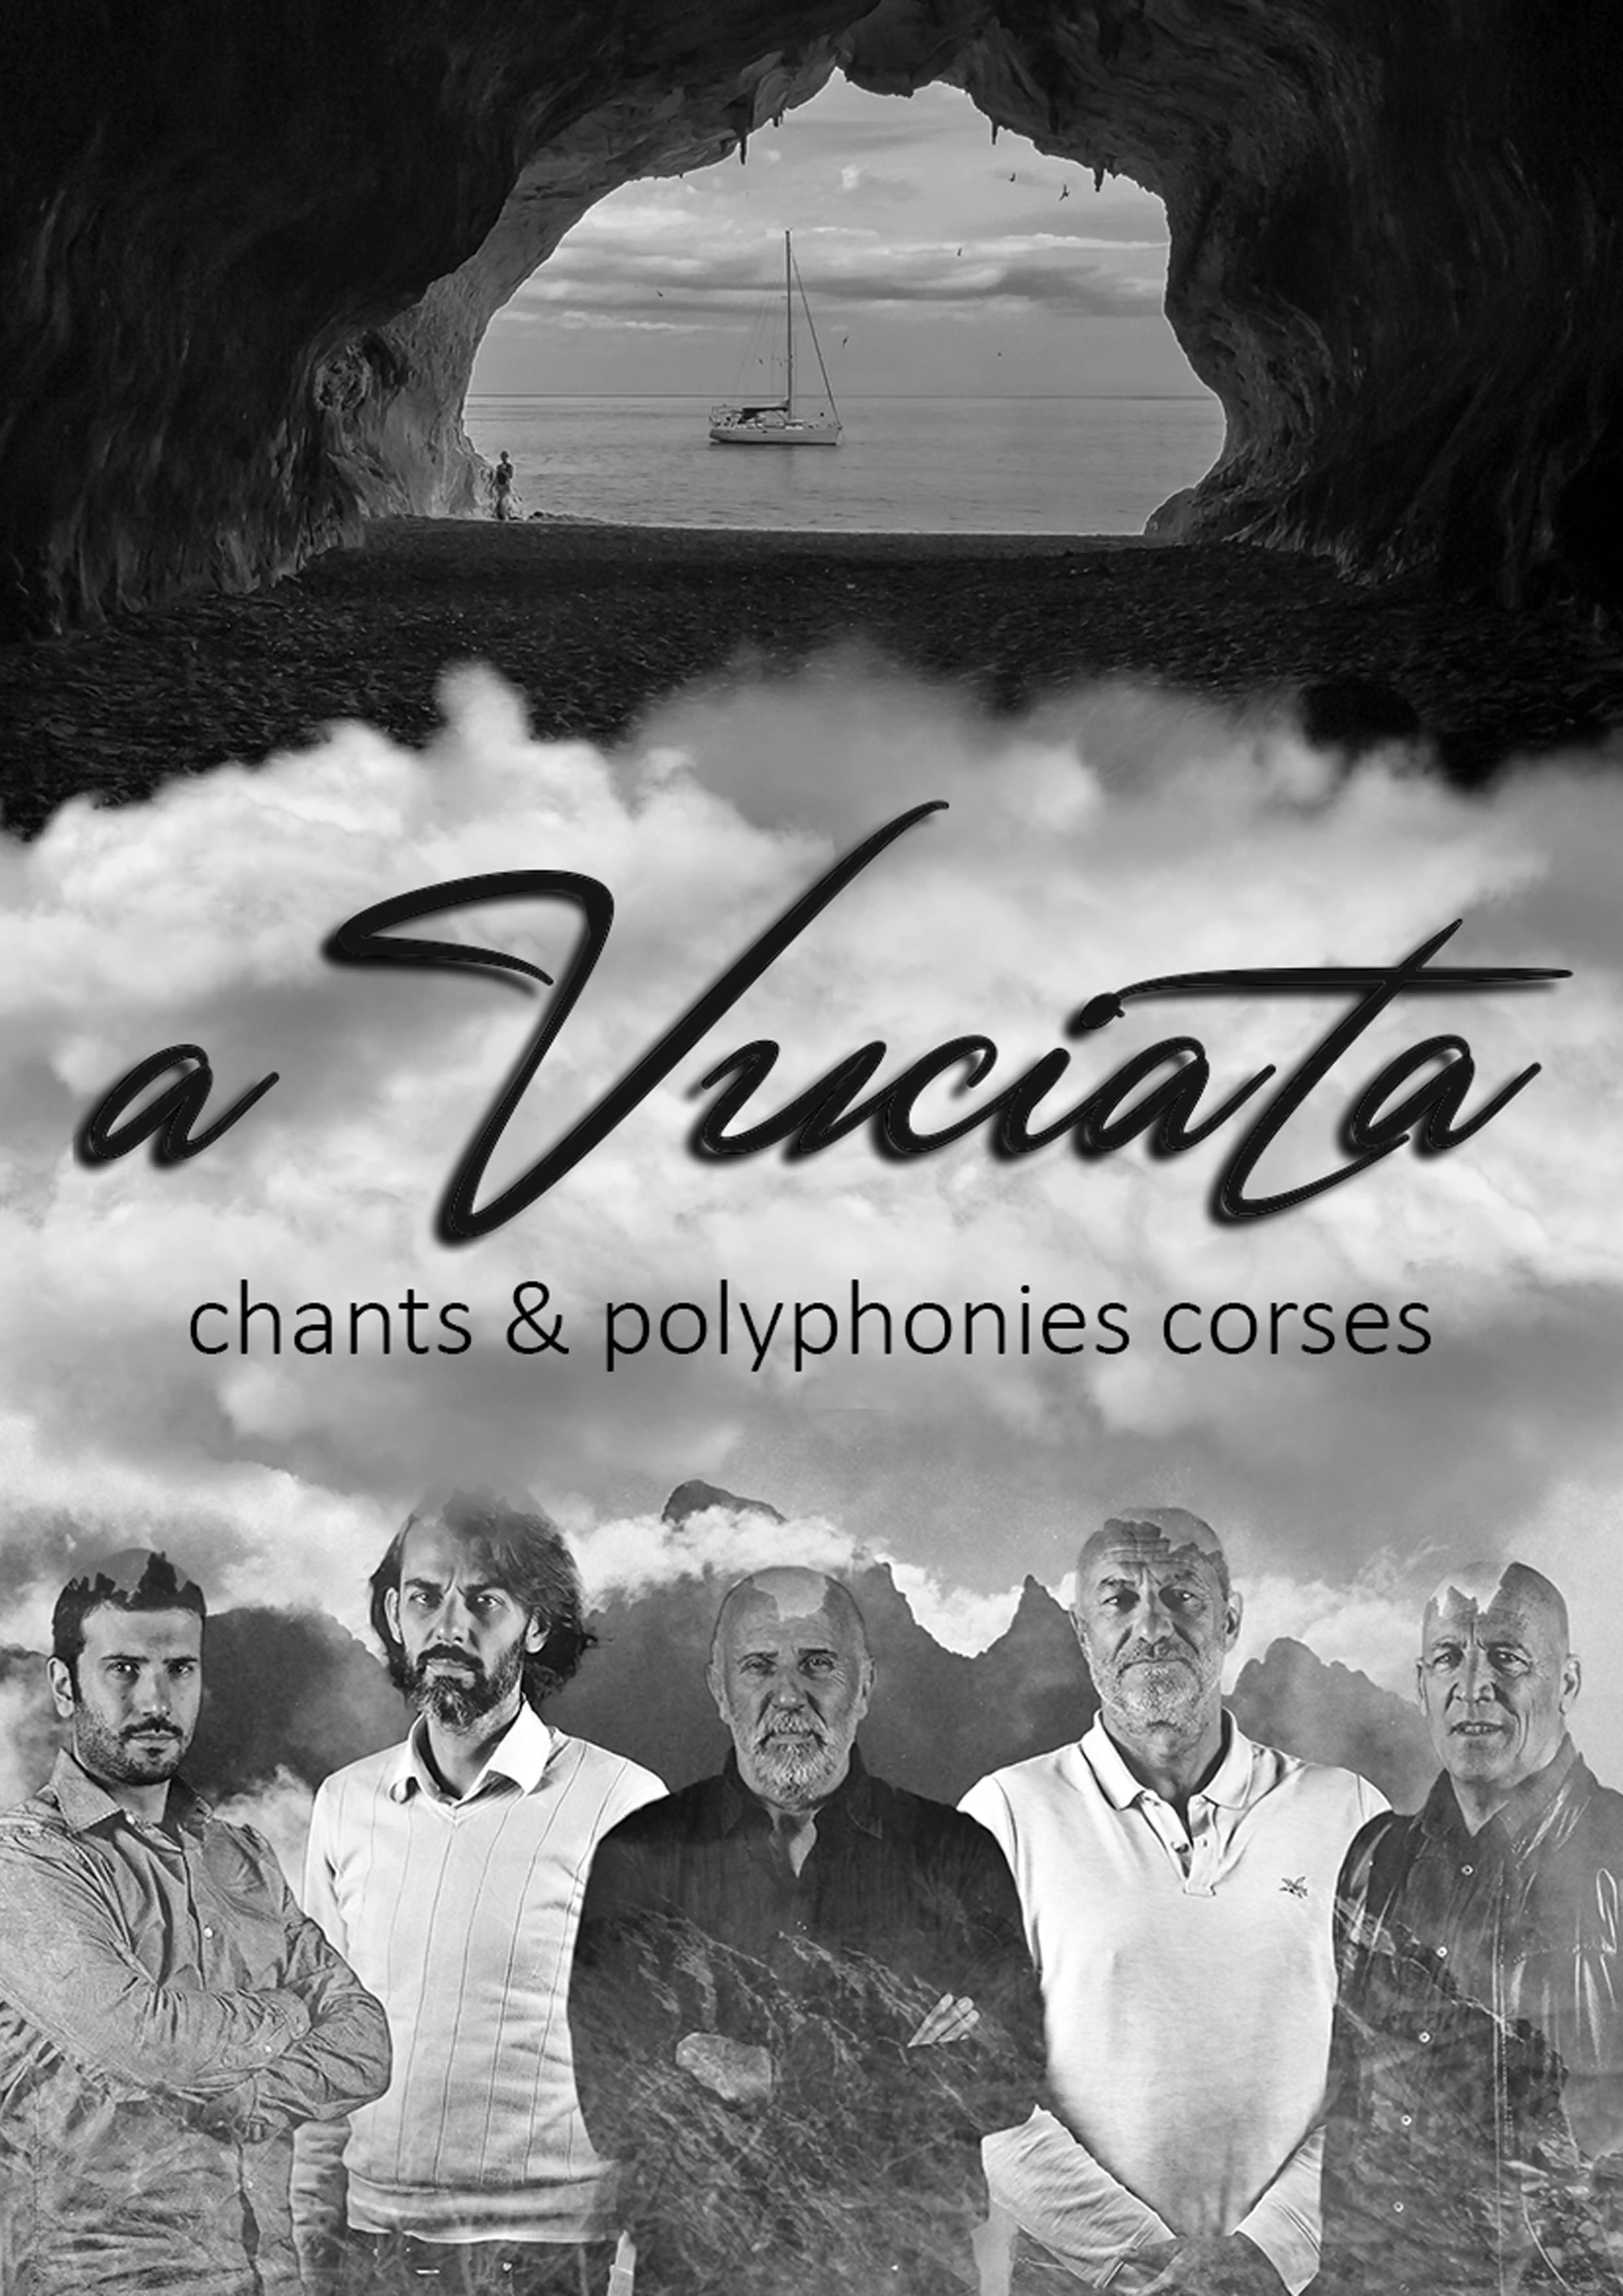 Claude Gérard Production présente A Vuciata